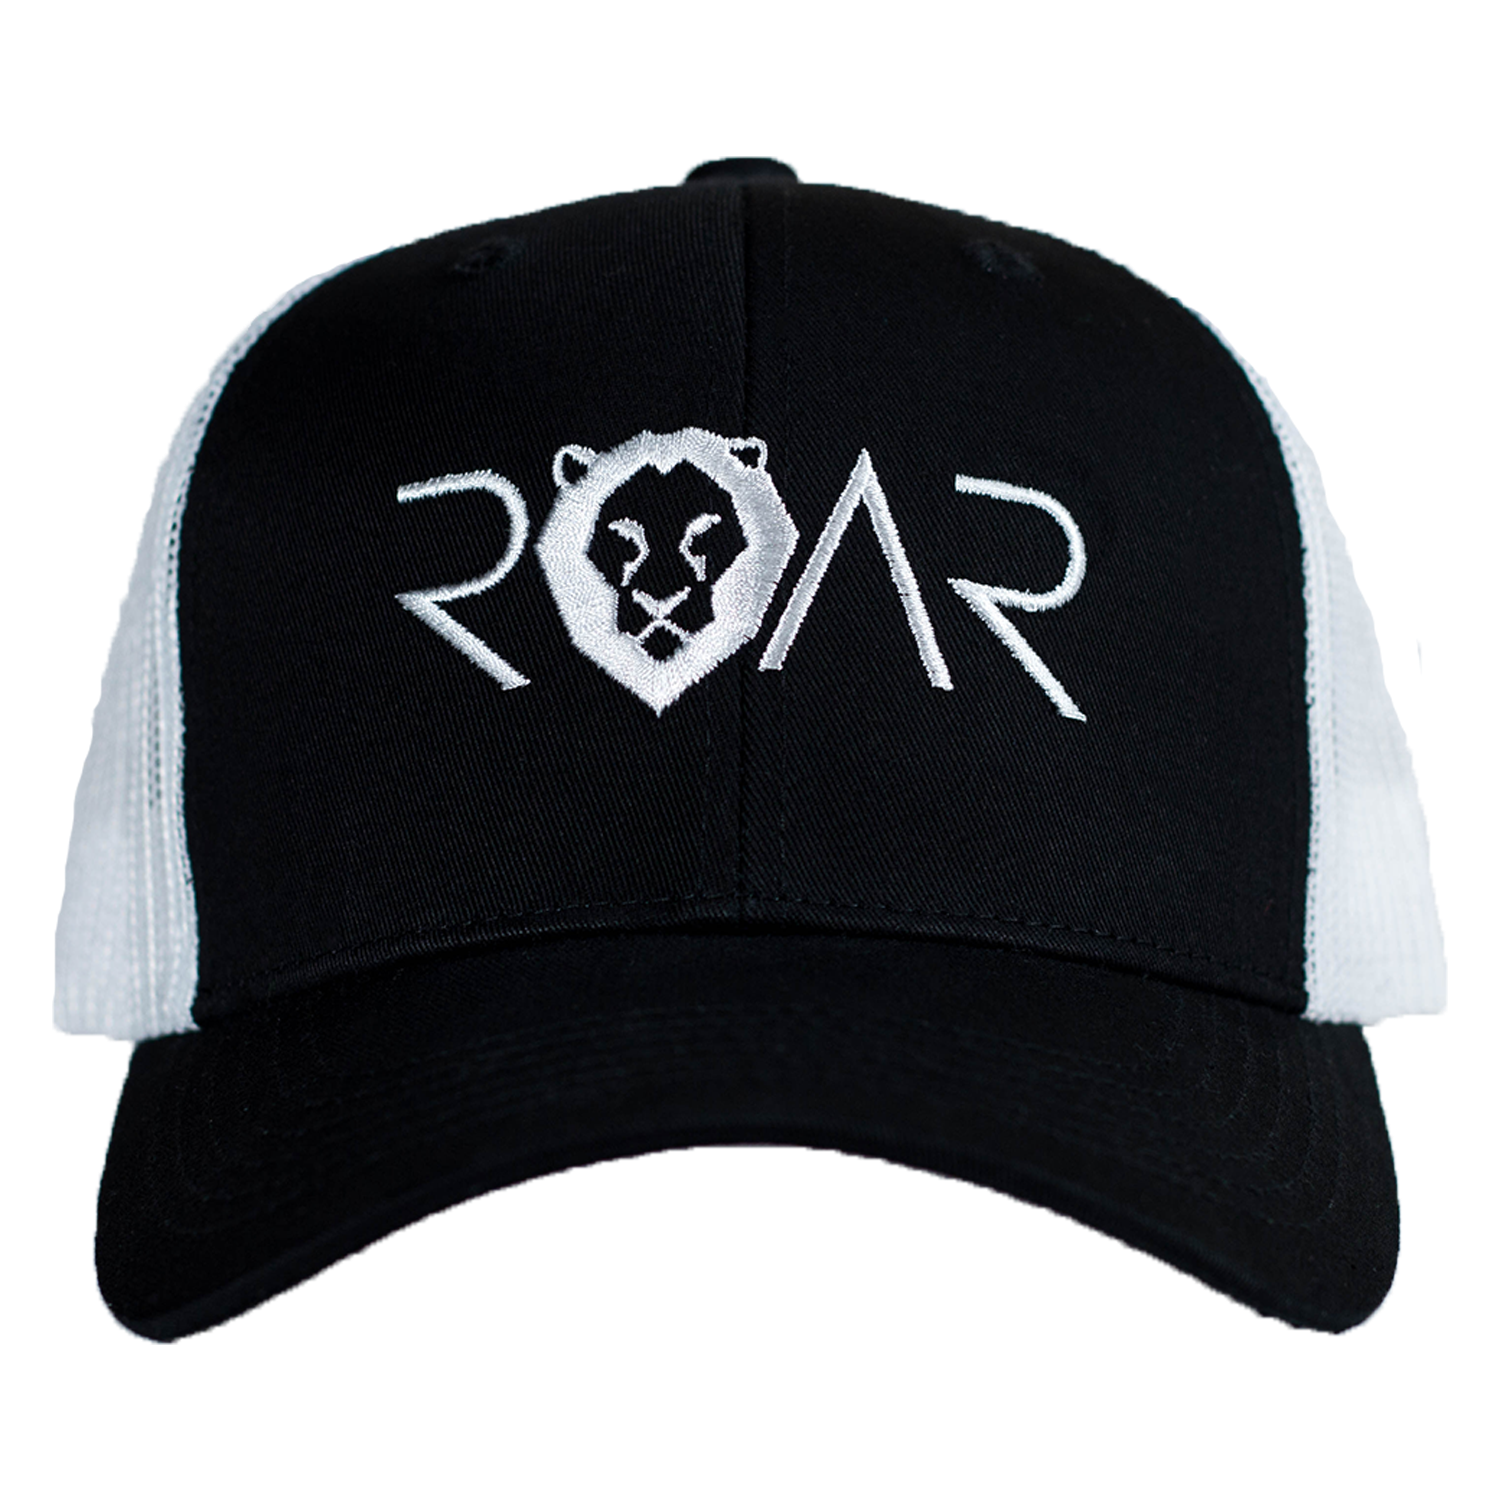 ROAR TRUCKER HAT - BLACK/WHITE